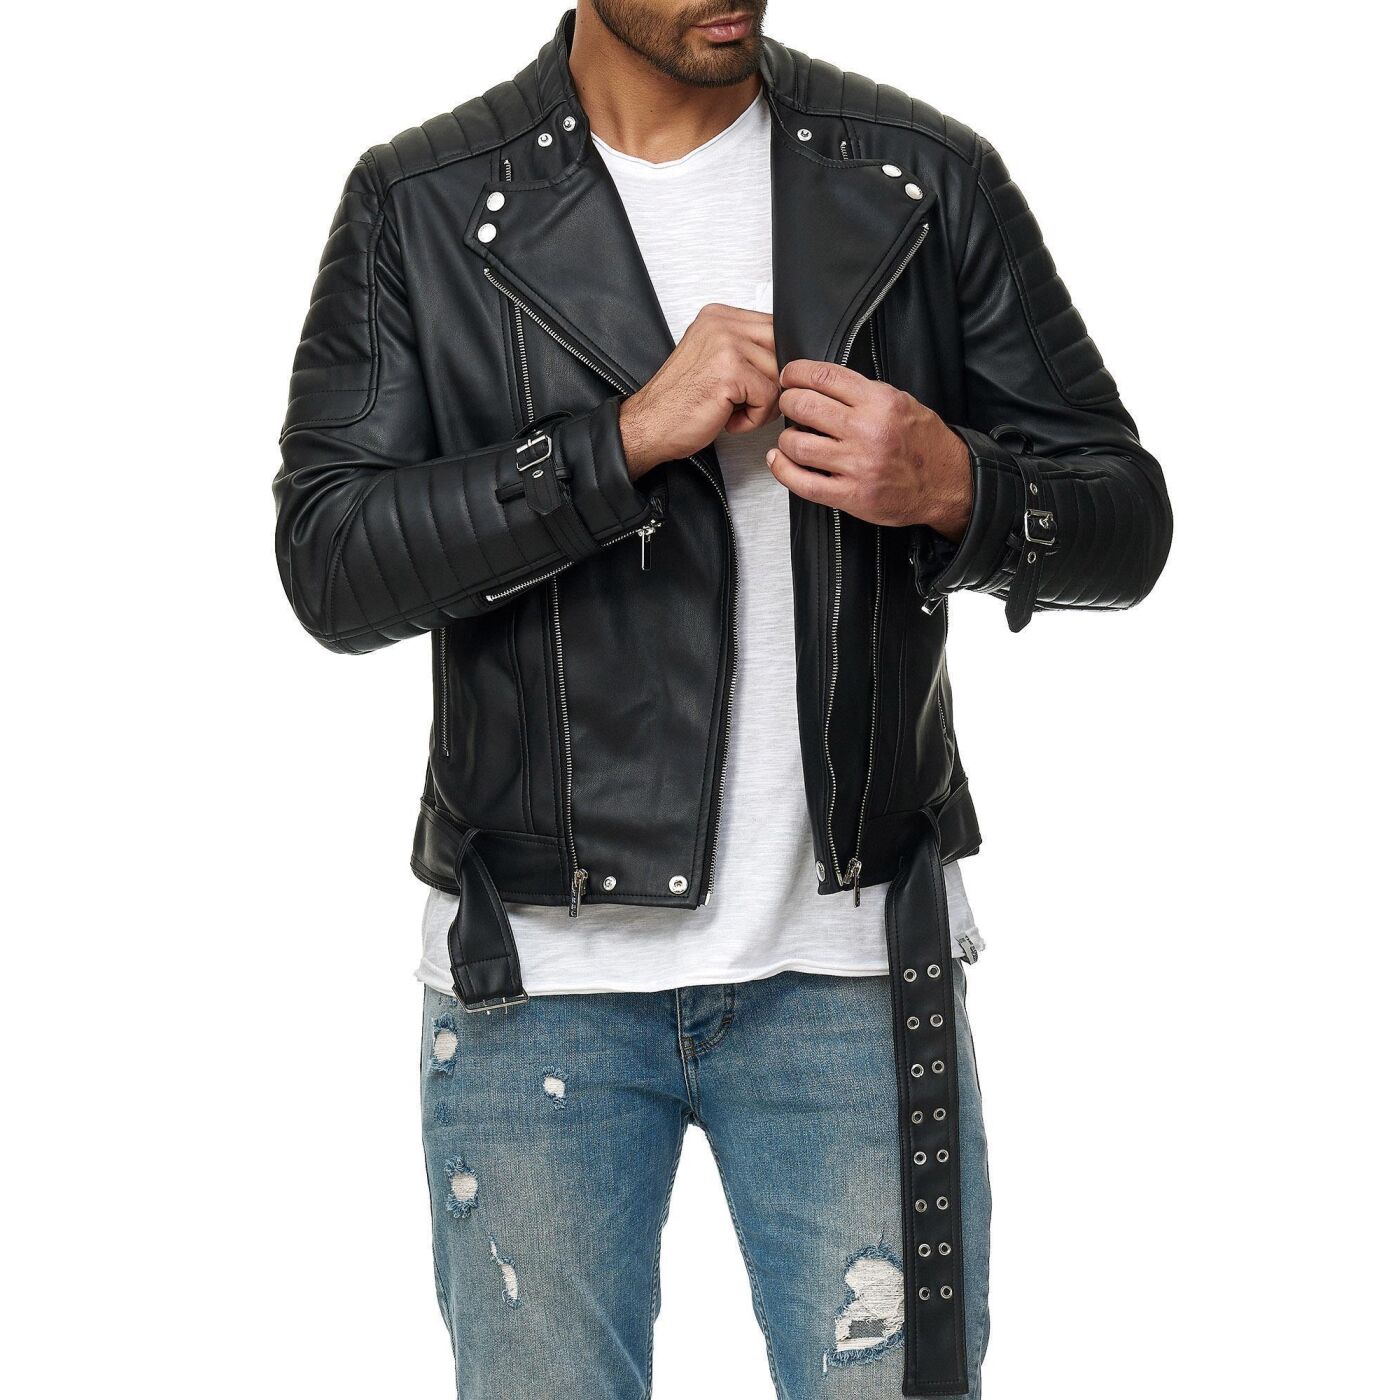 Buy Mens Quilted Leather Biker Jacket - Black Leather Jacket for Men